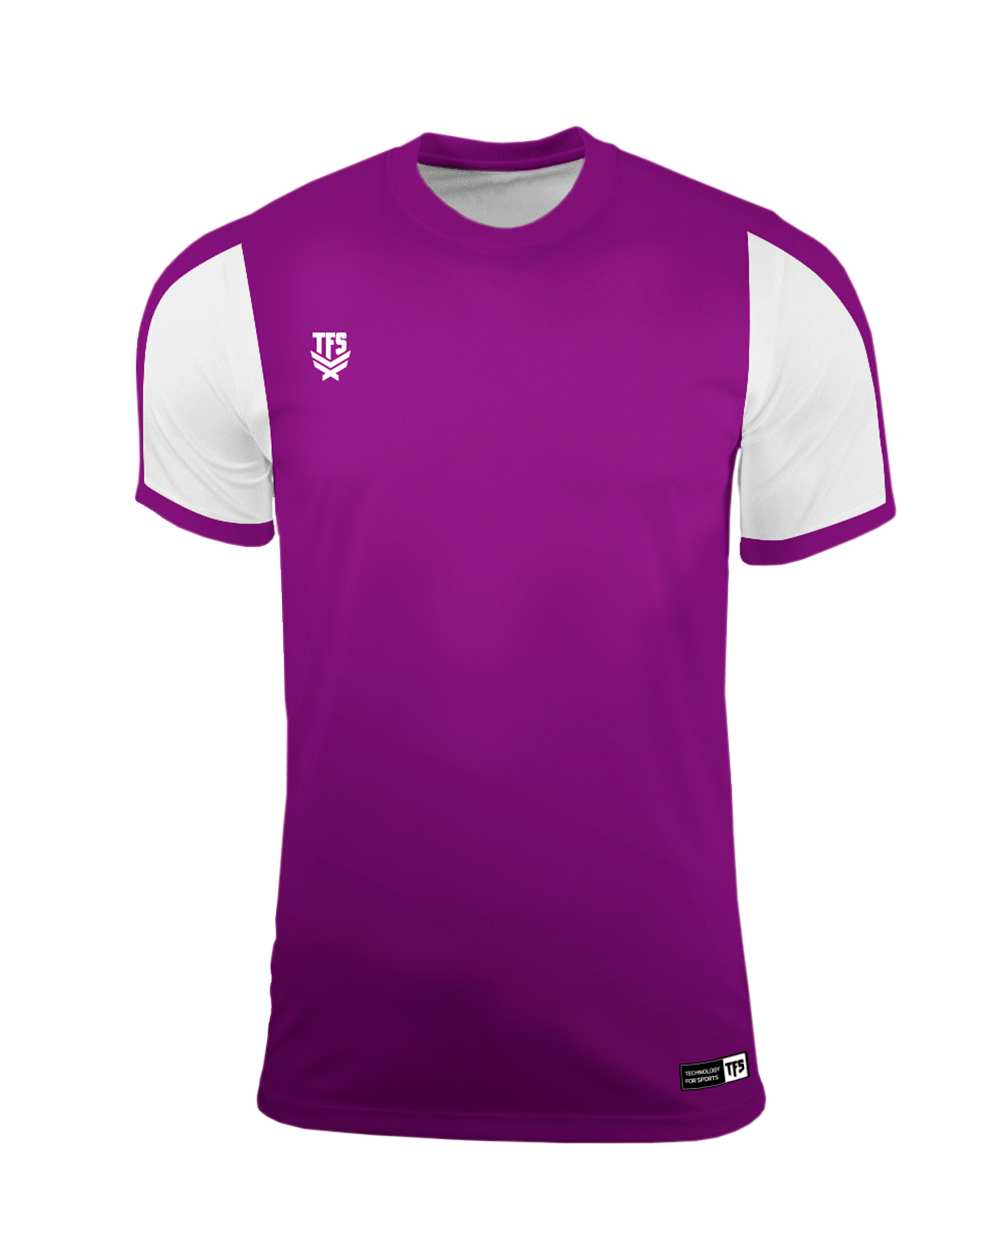 Camiseta Futbol TFS Portugal -